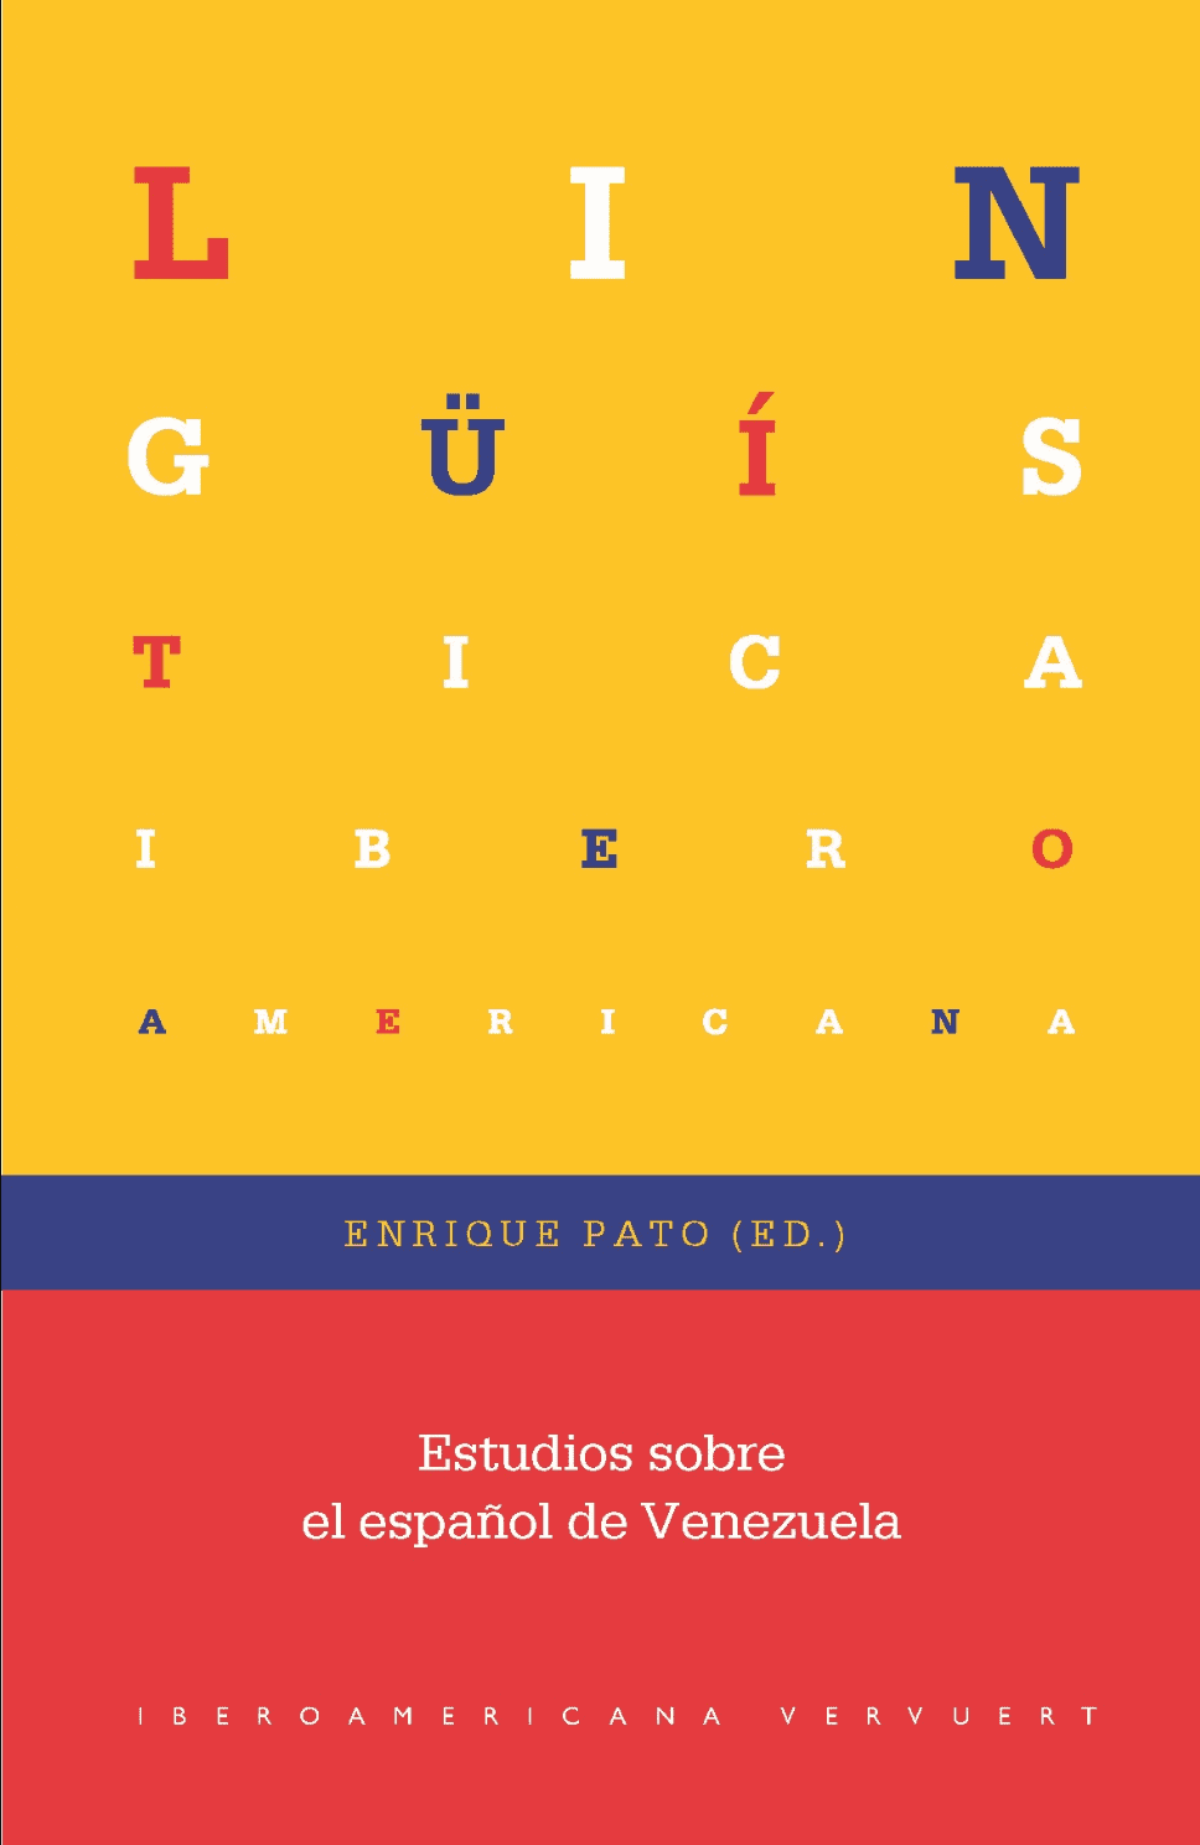 Enrique Pato (ed.) / Estudios sobre el español de Venezuela